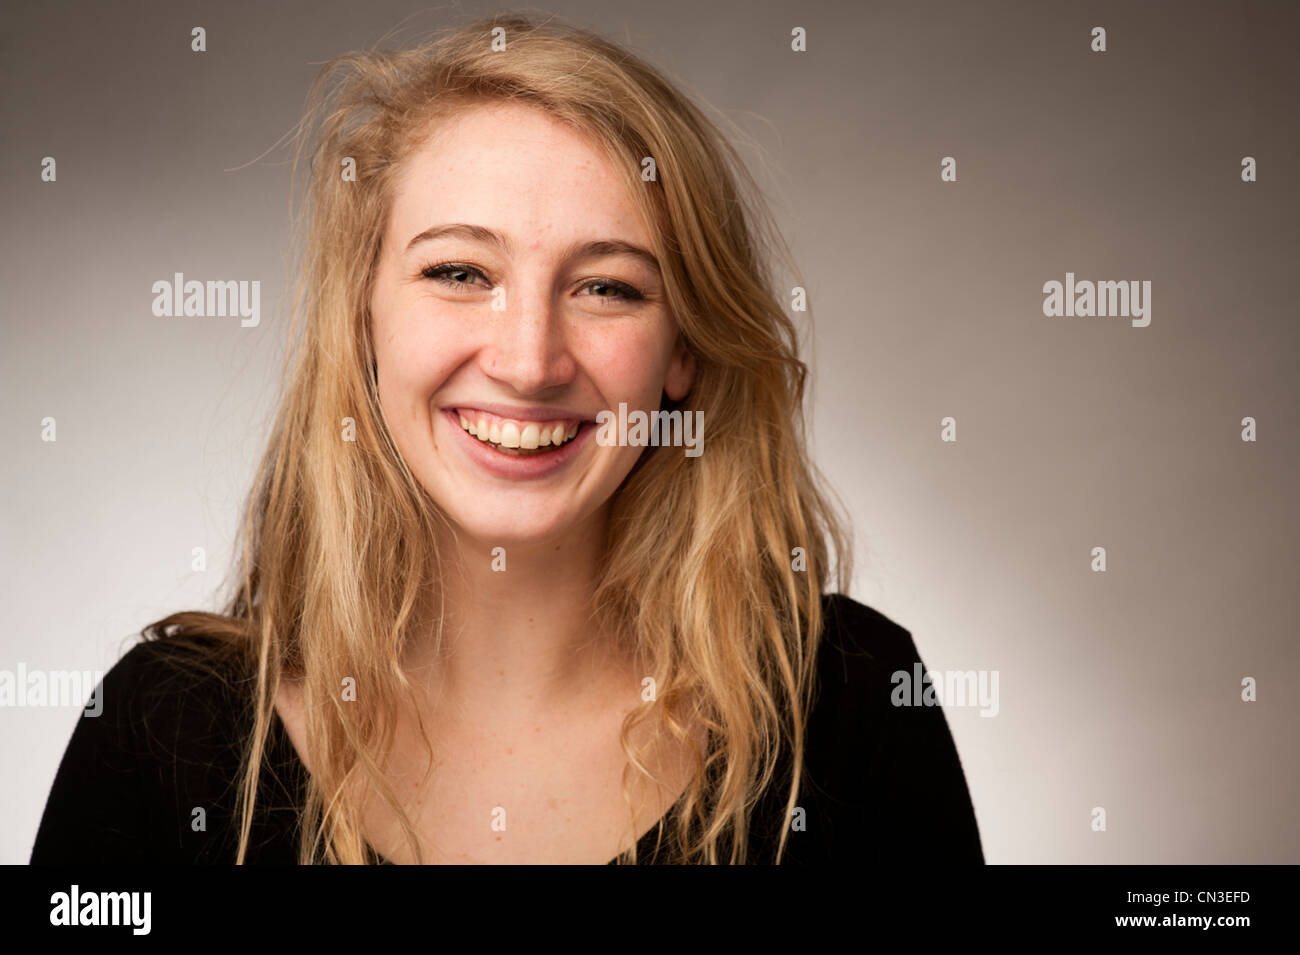 Une jeune blonde 19 ans happy smiling woman laughing positive Banque D'Images